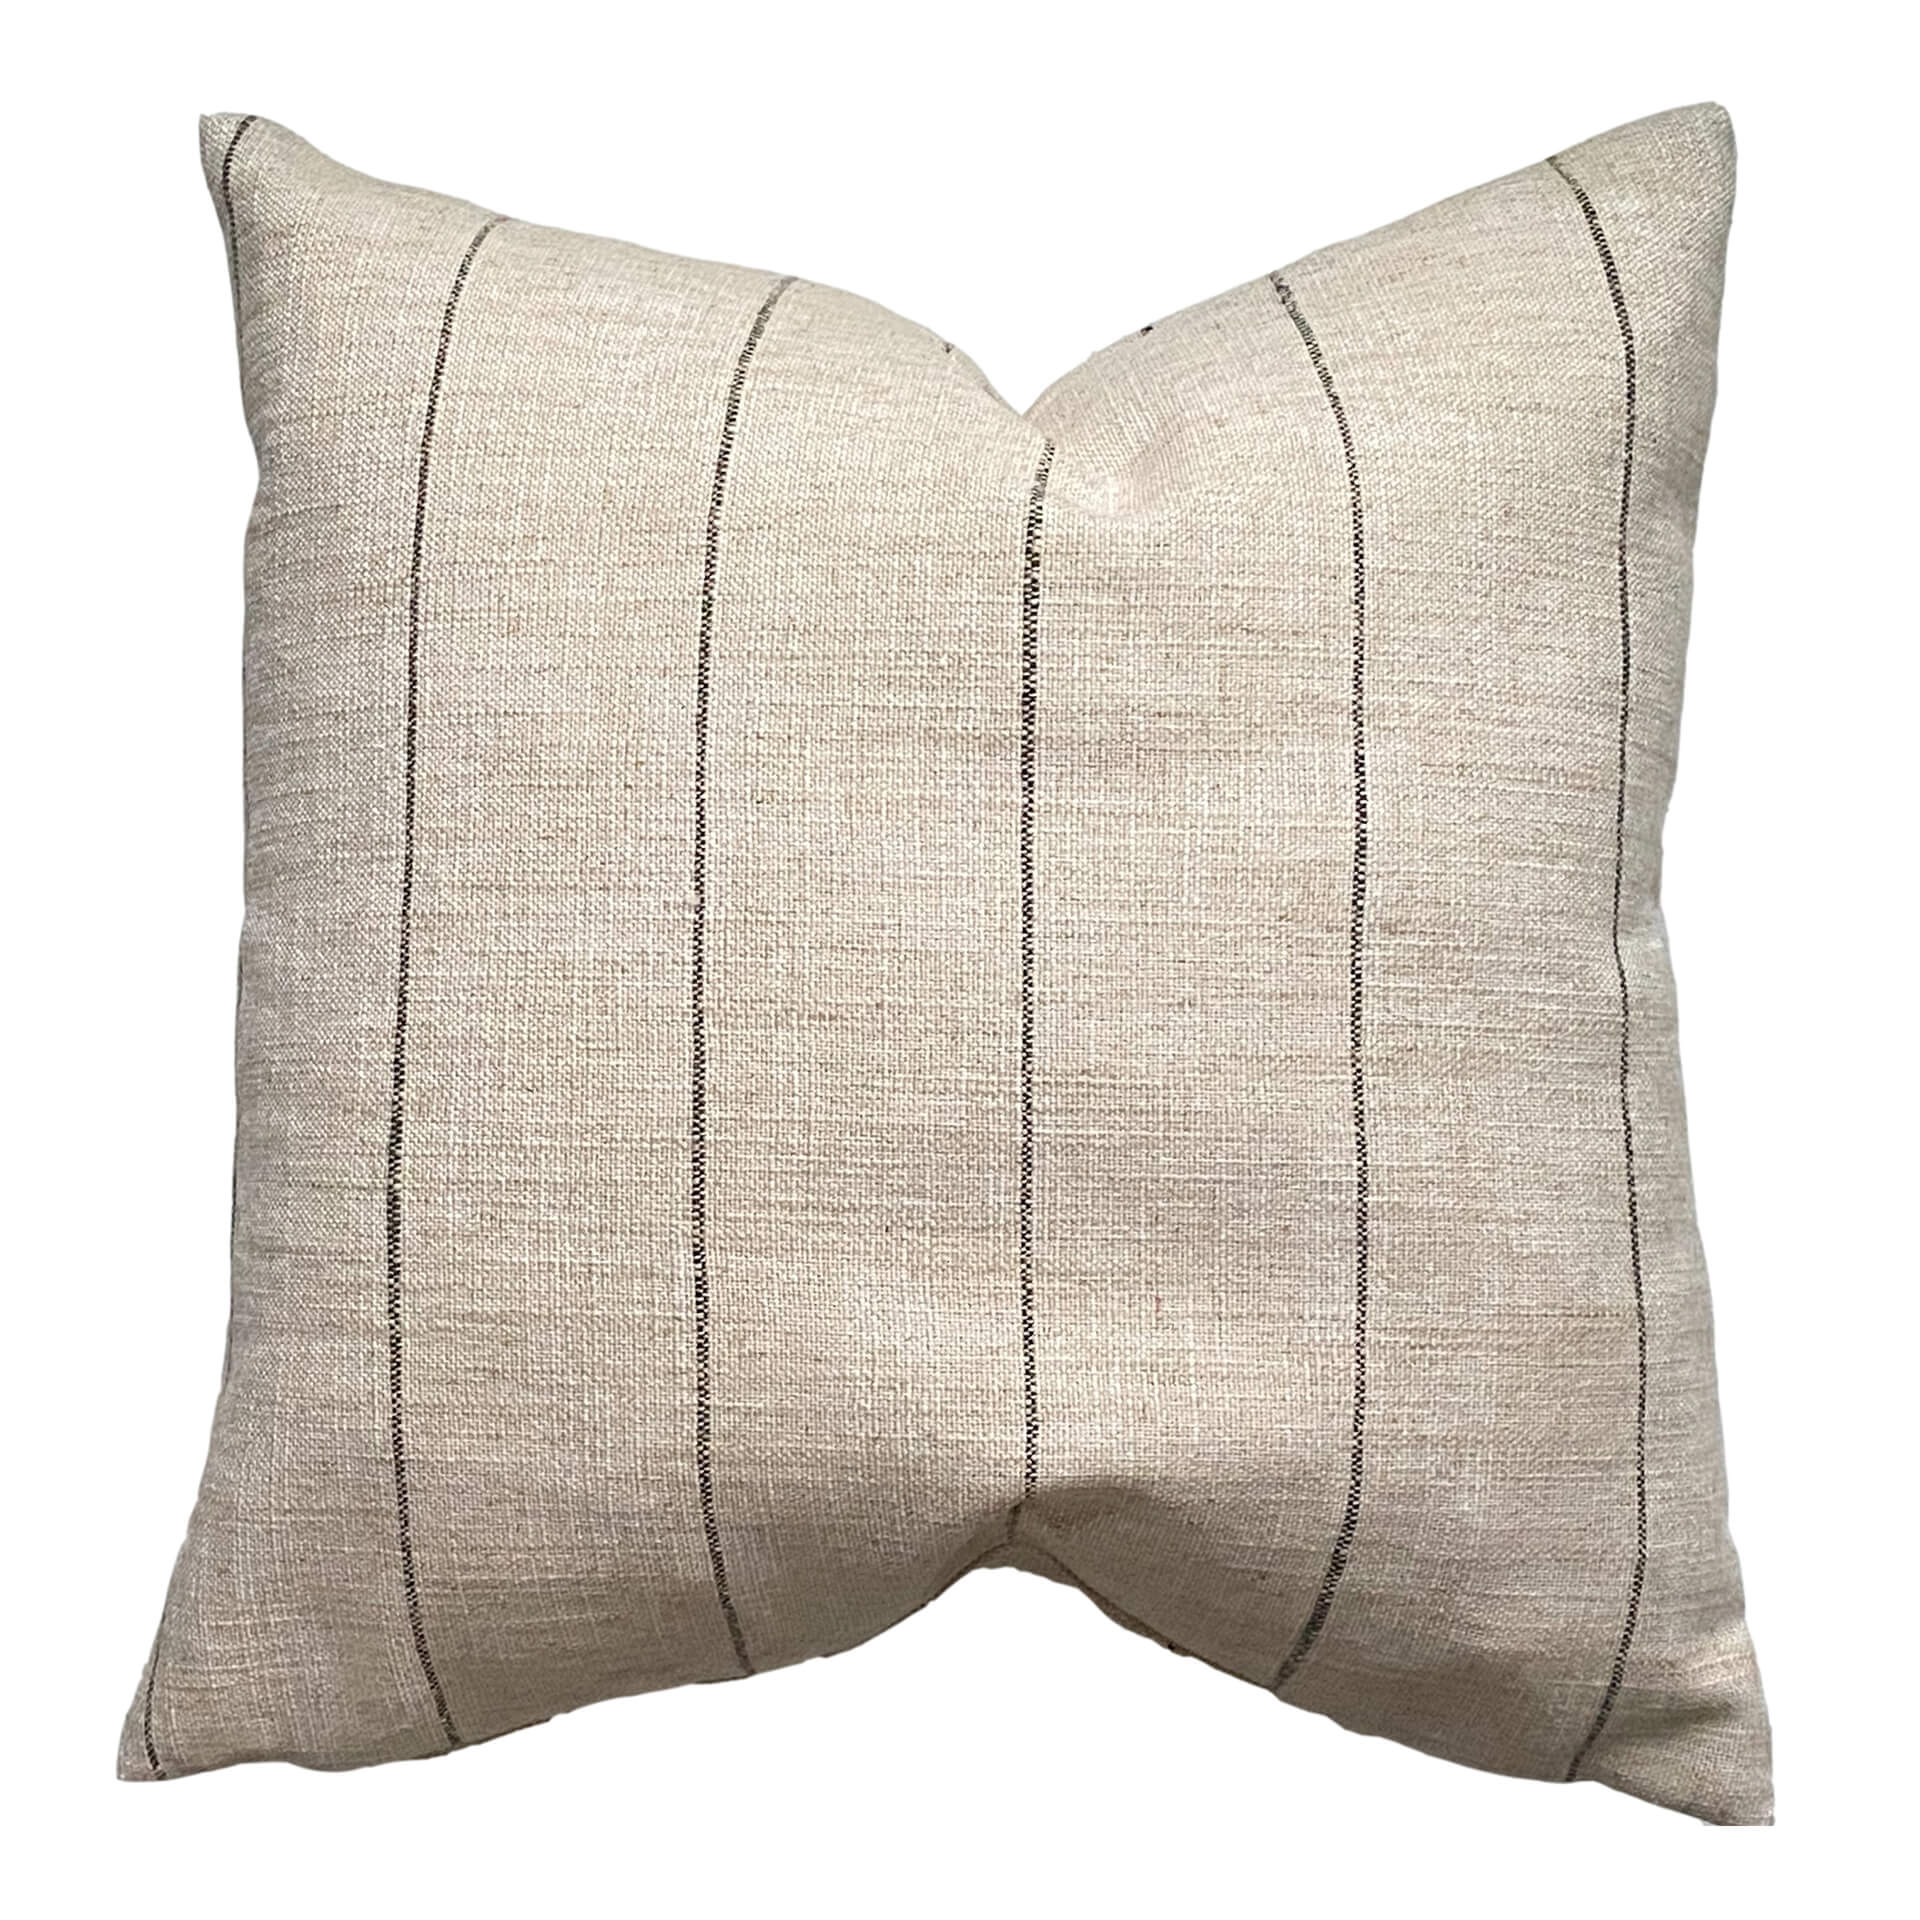 Creama Stripe Pillow Cover